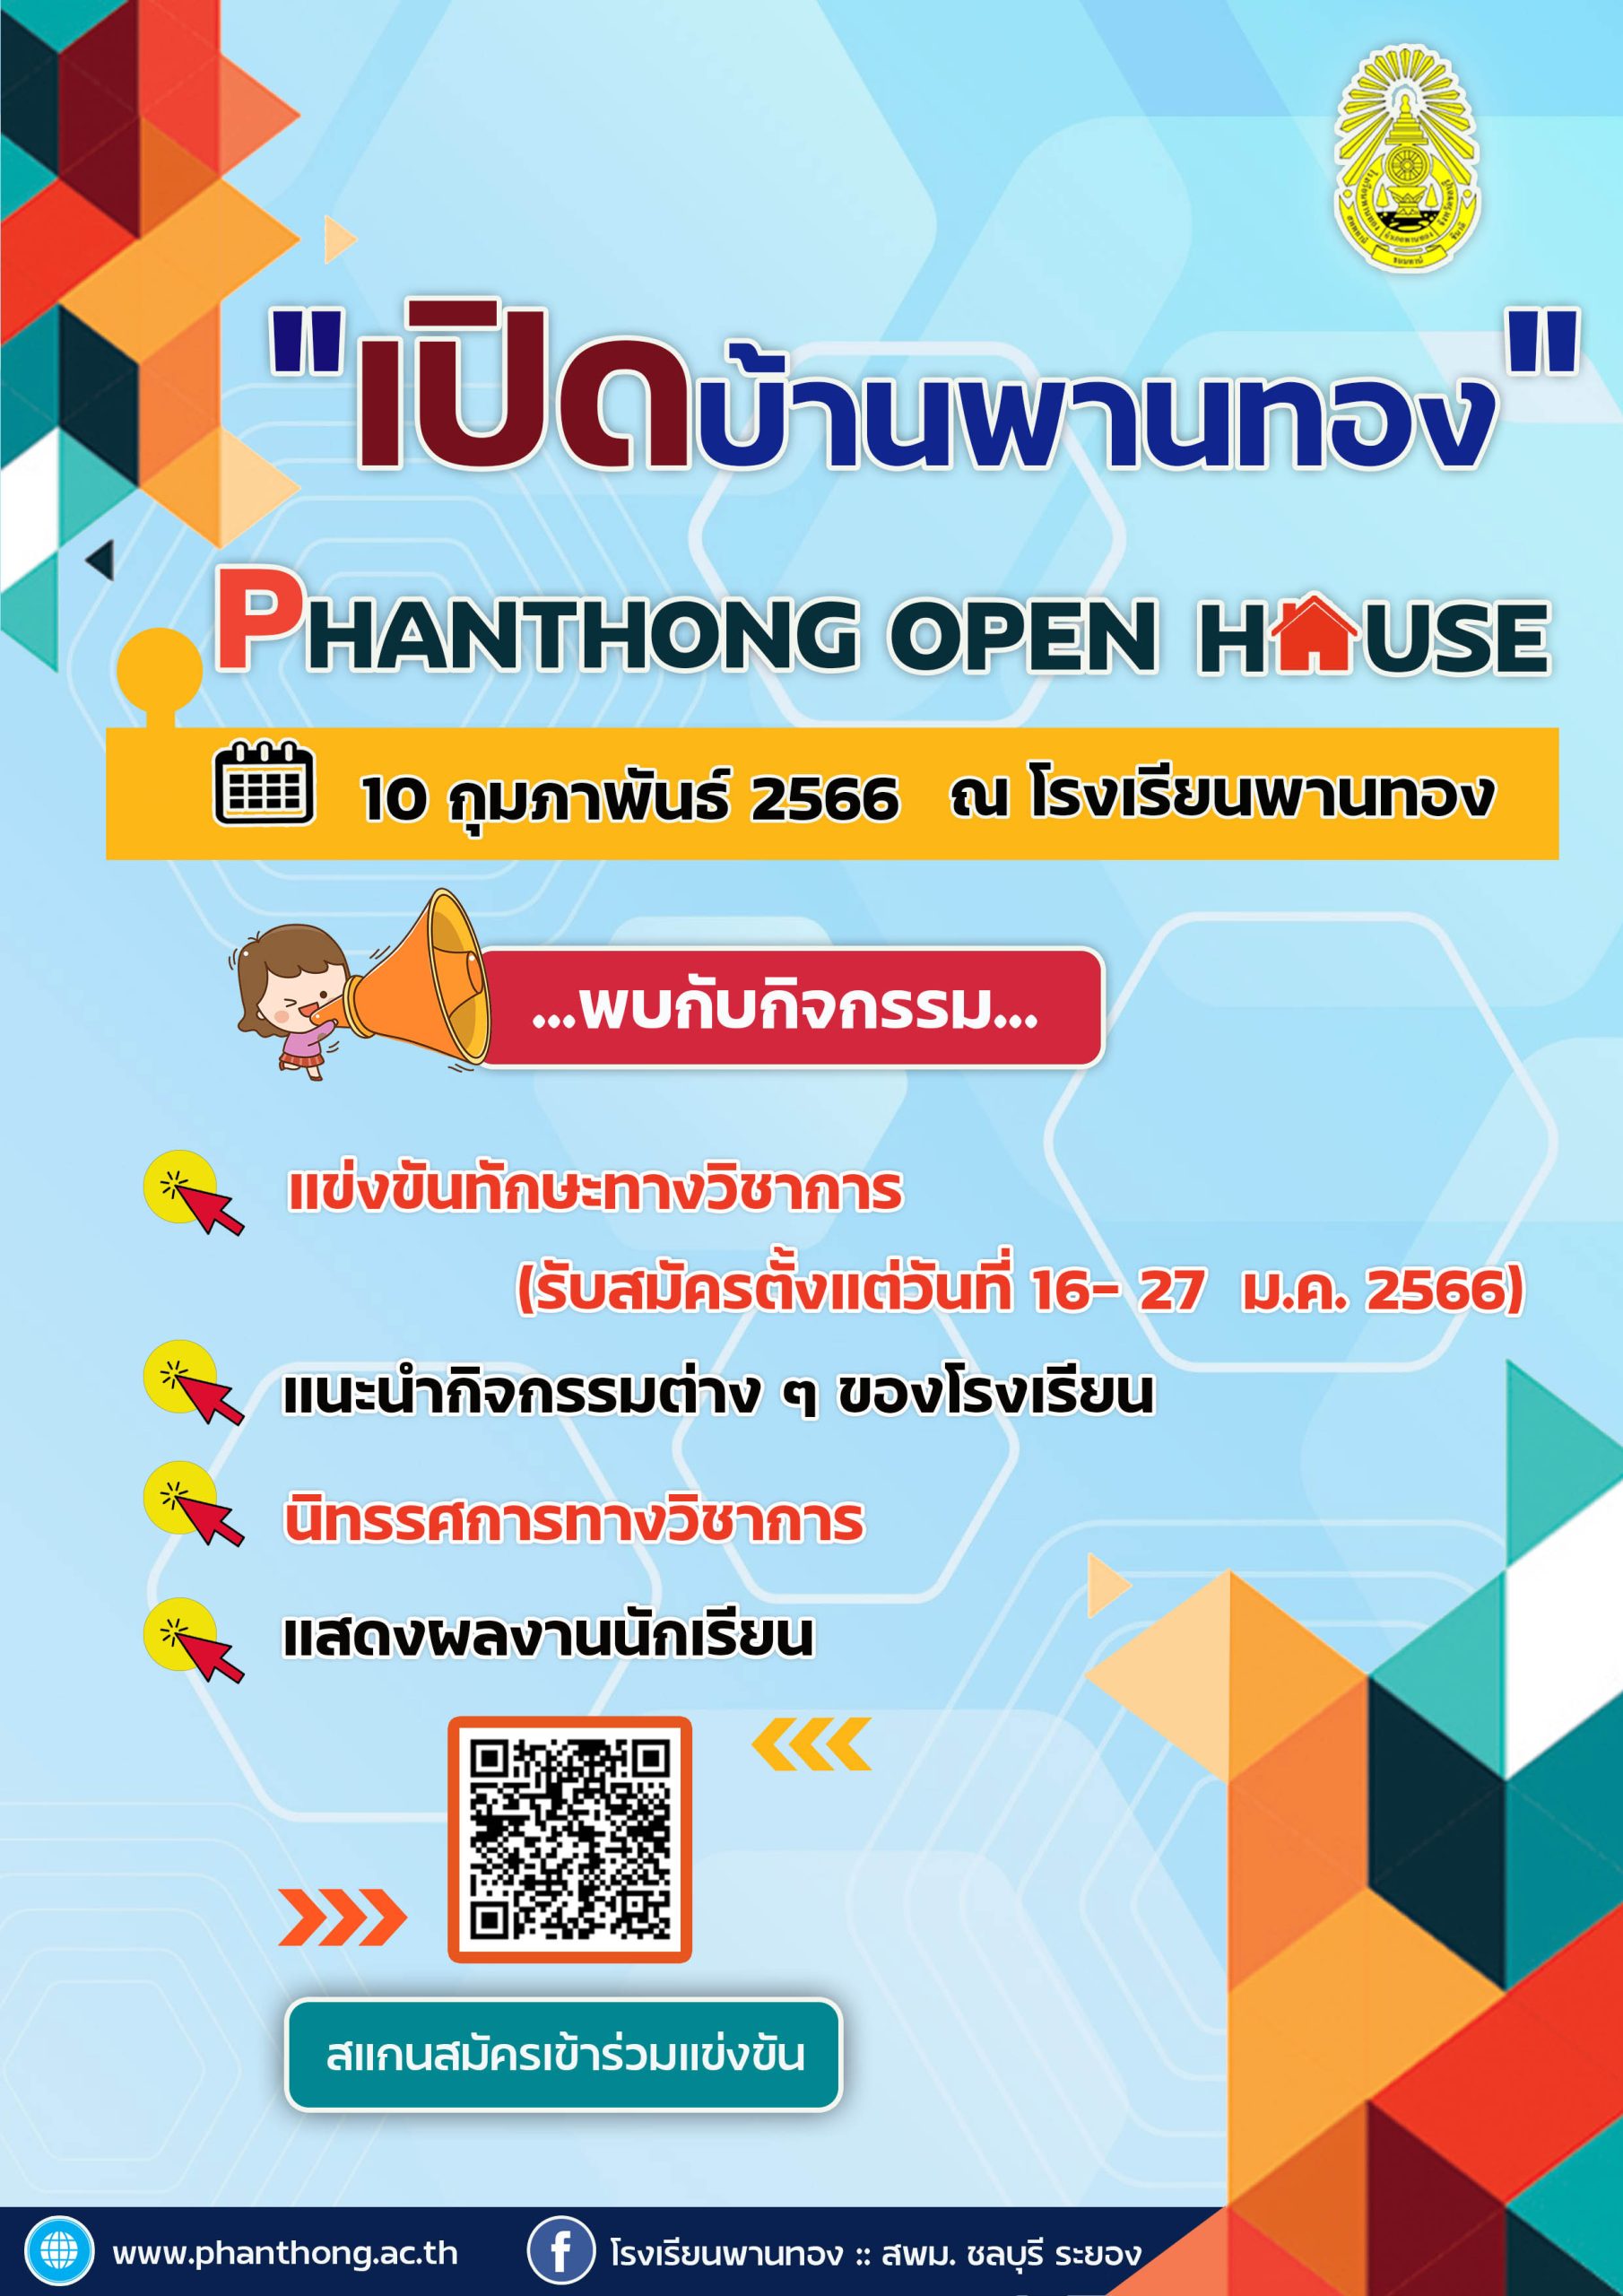 เปิดบ้านพานทอง "Phantong Open House"